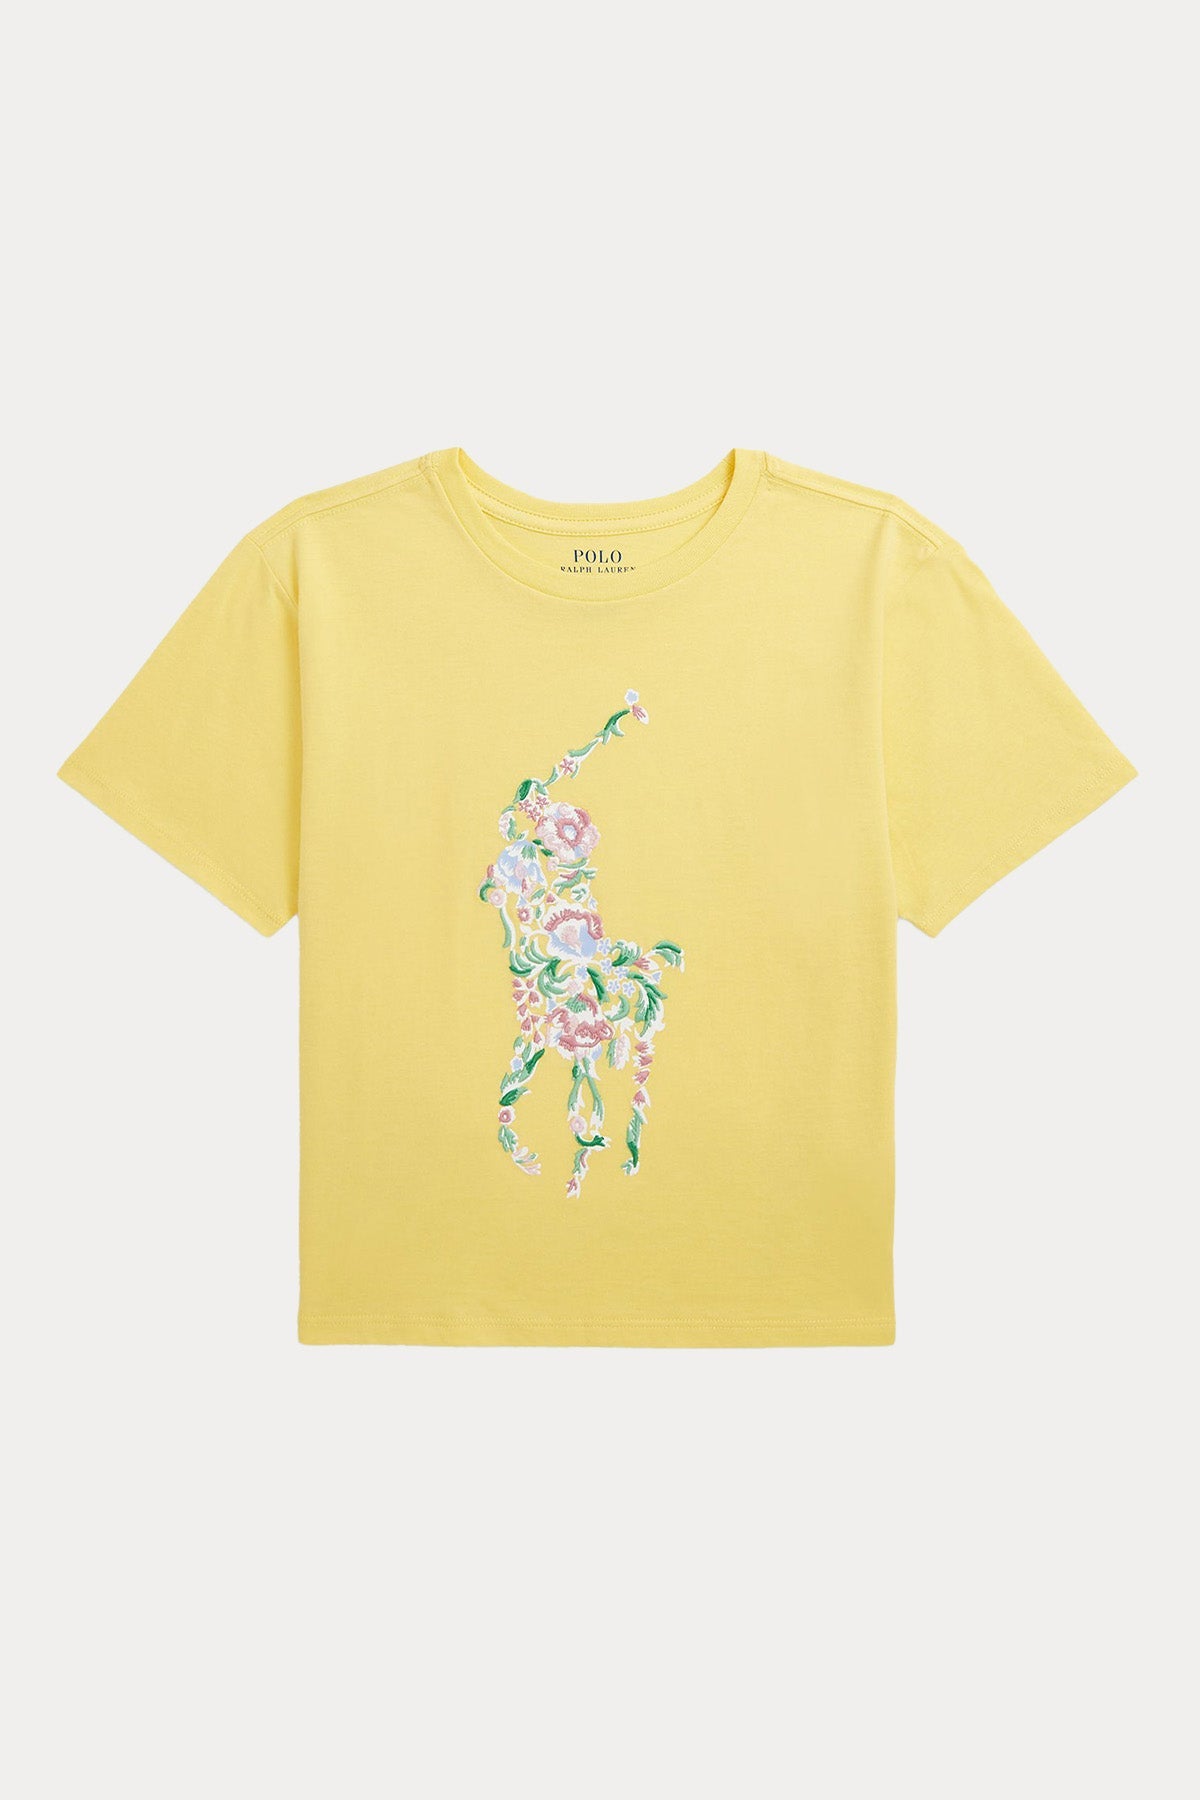 Polo Ralph Lauren Kids 2-3 Yaş Kız Çocuk Big Pony Logolu T-shirt